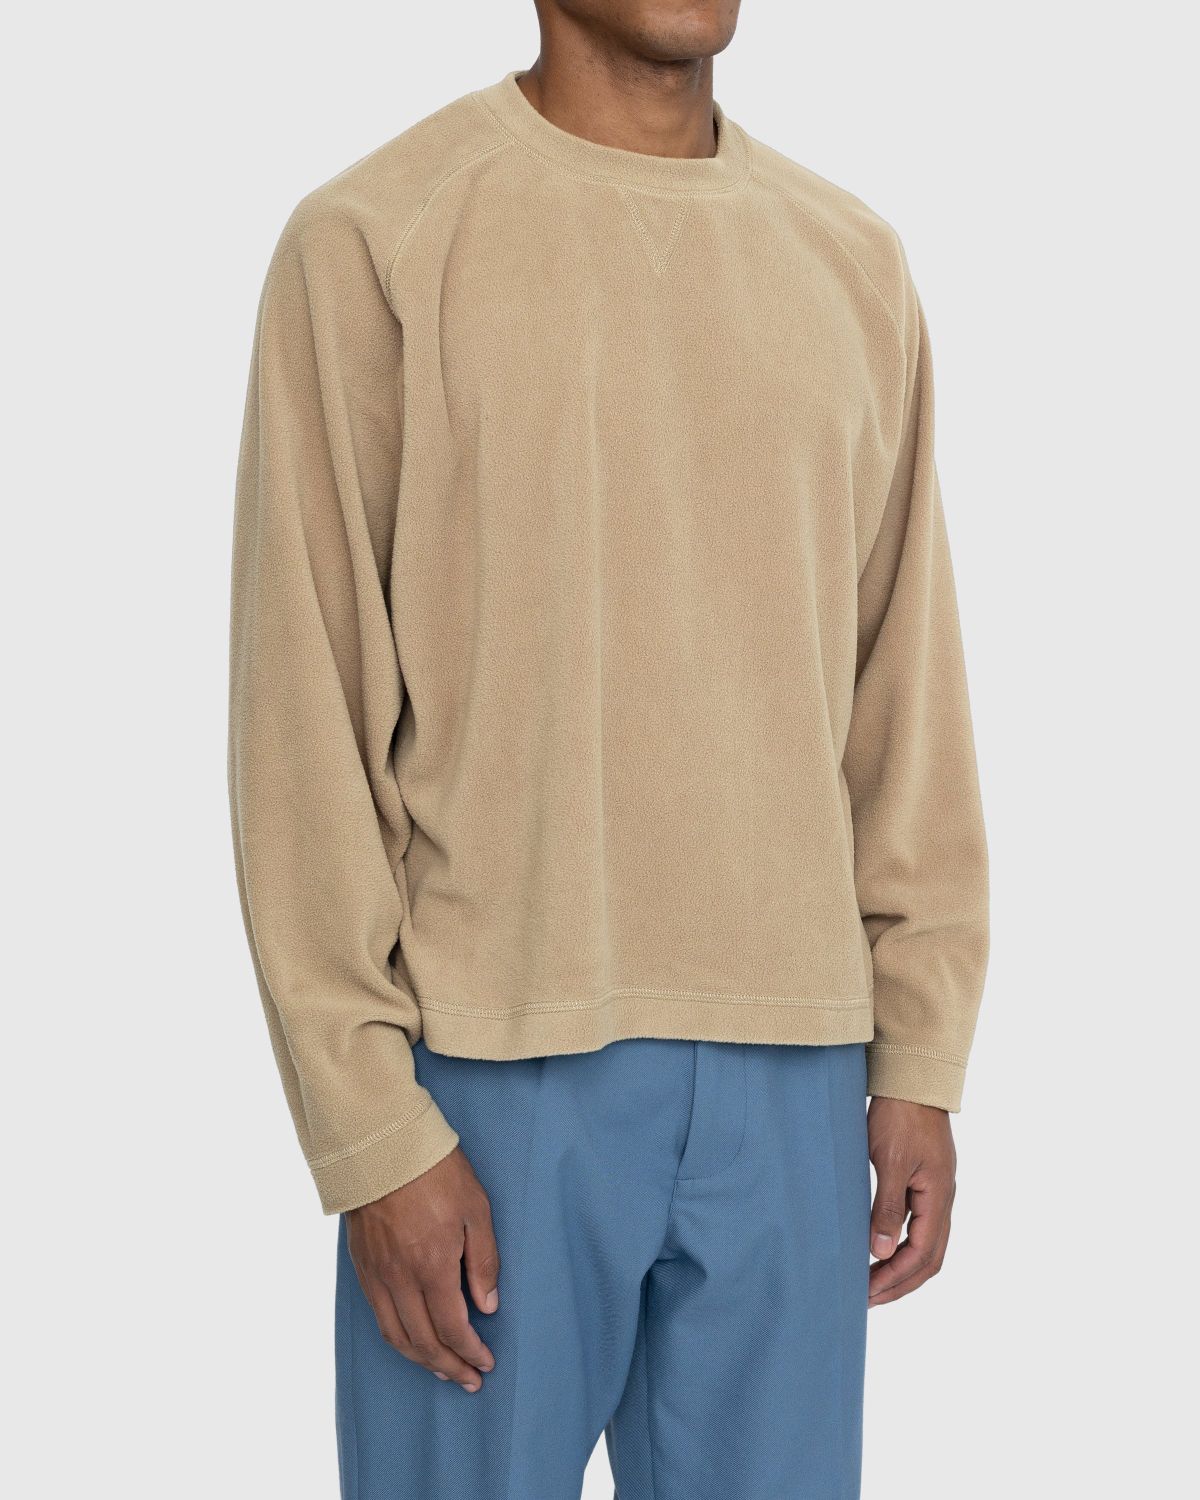 Highsnobiety – Polar Fleece Raglan Sweater Beige - Knitwear - Beige - Image 3